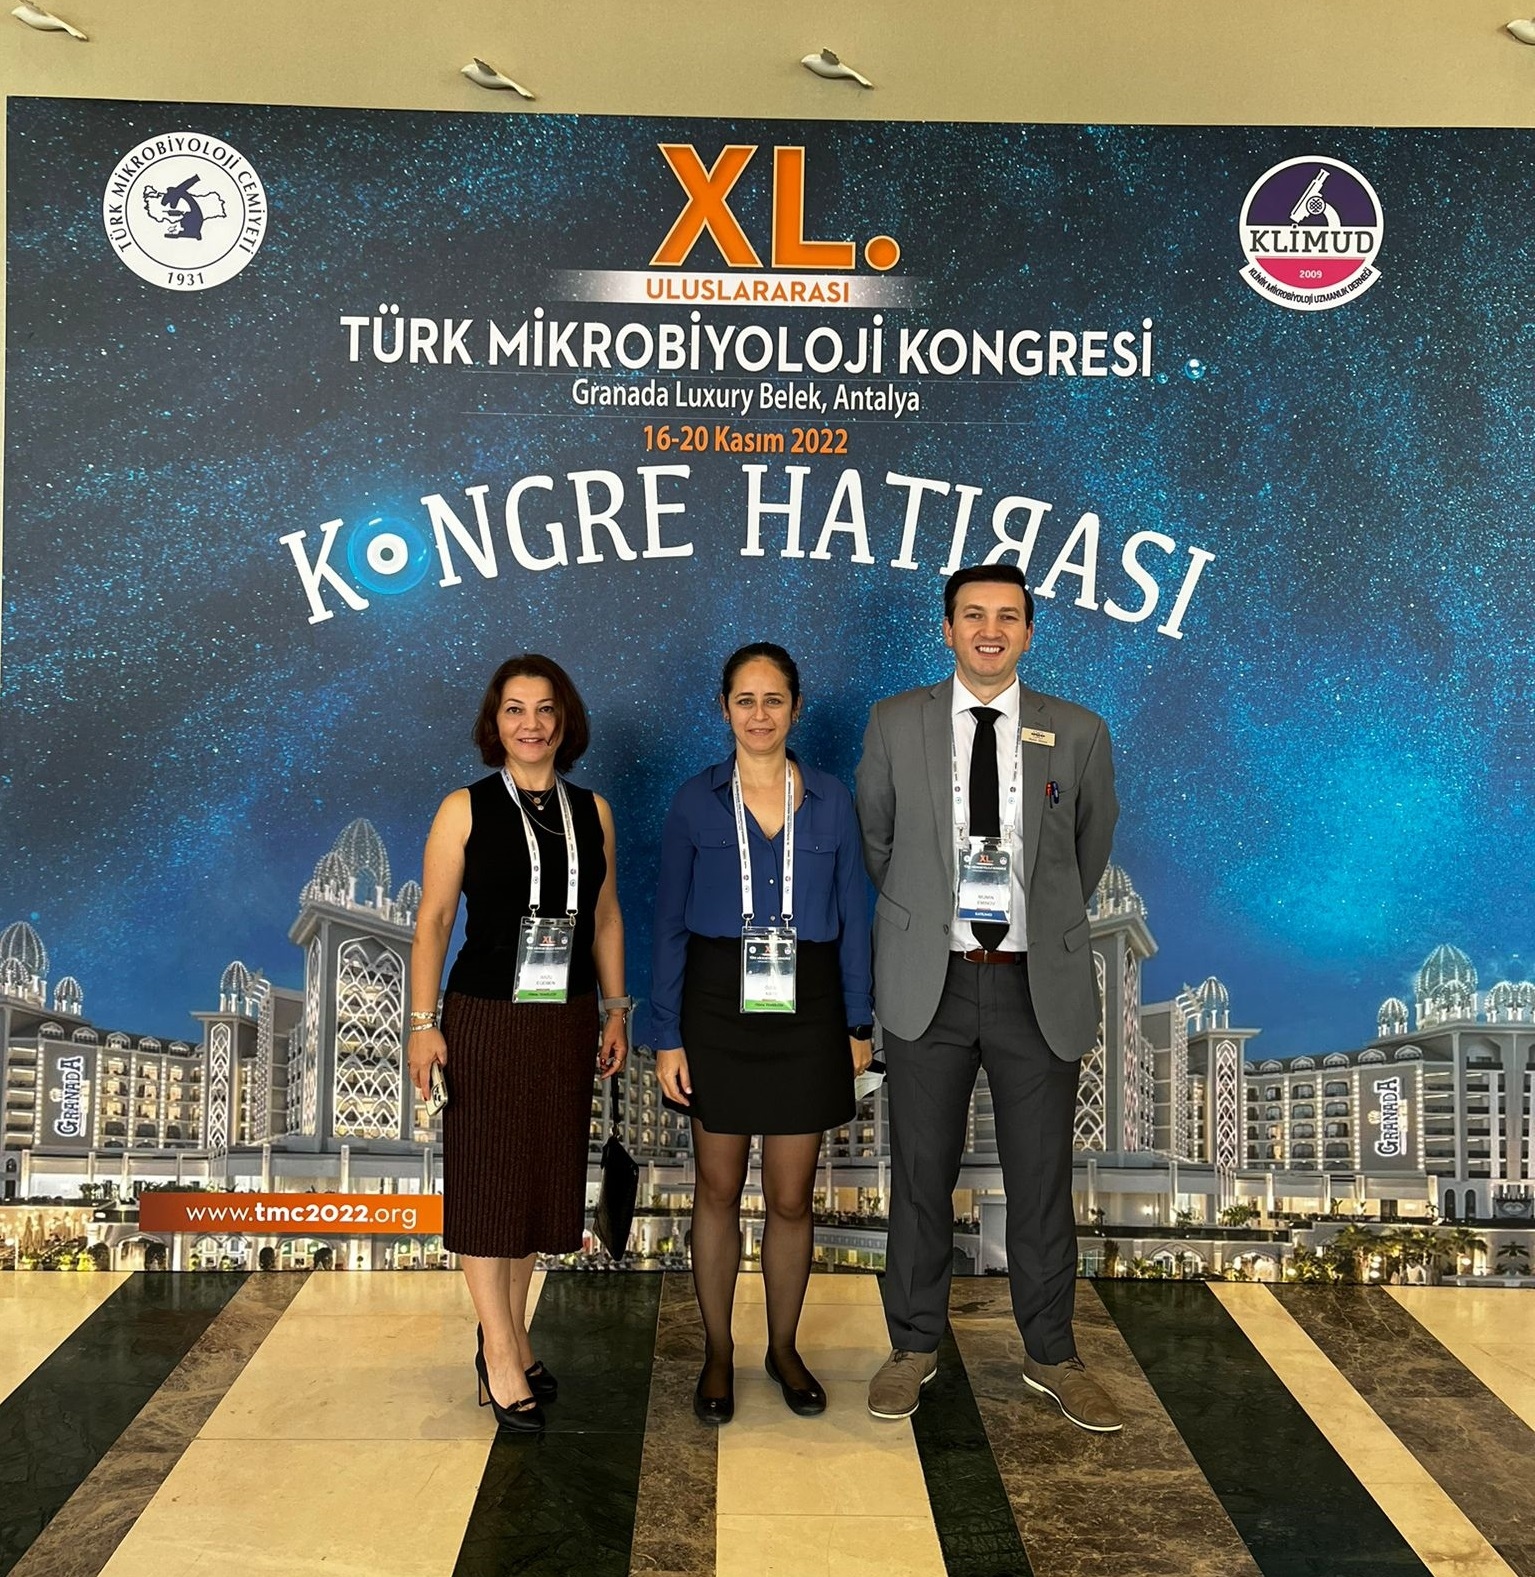 XL. International Turkish Microbiology Congress